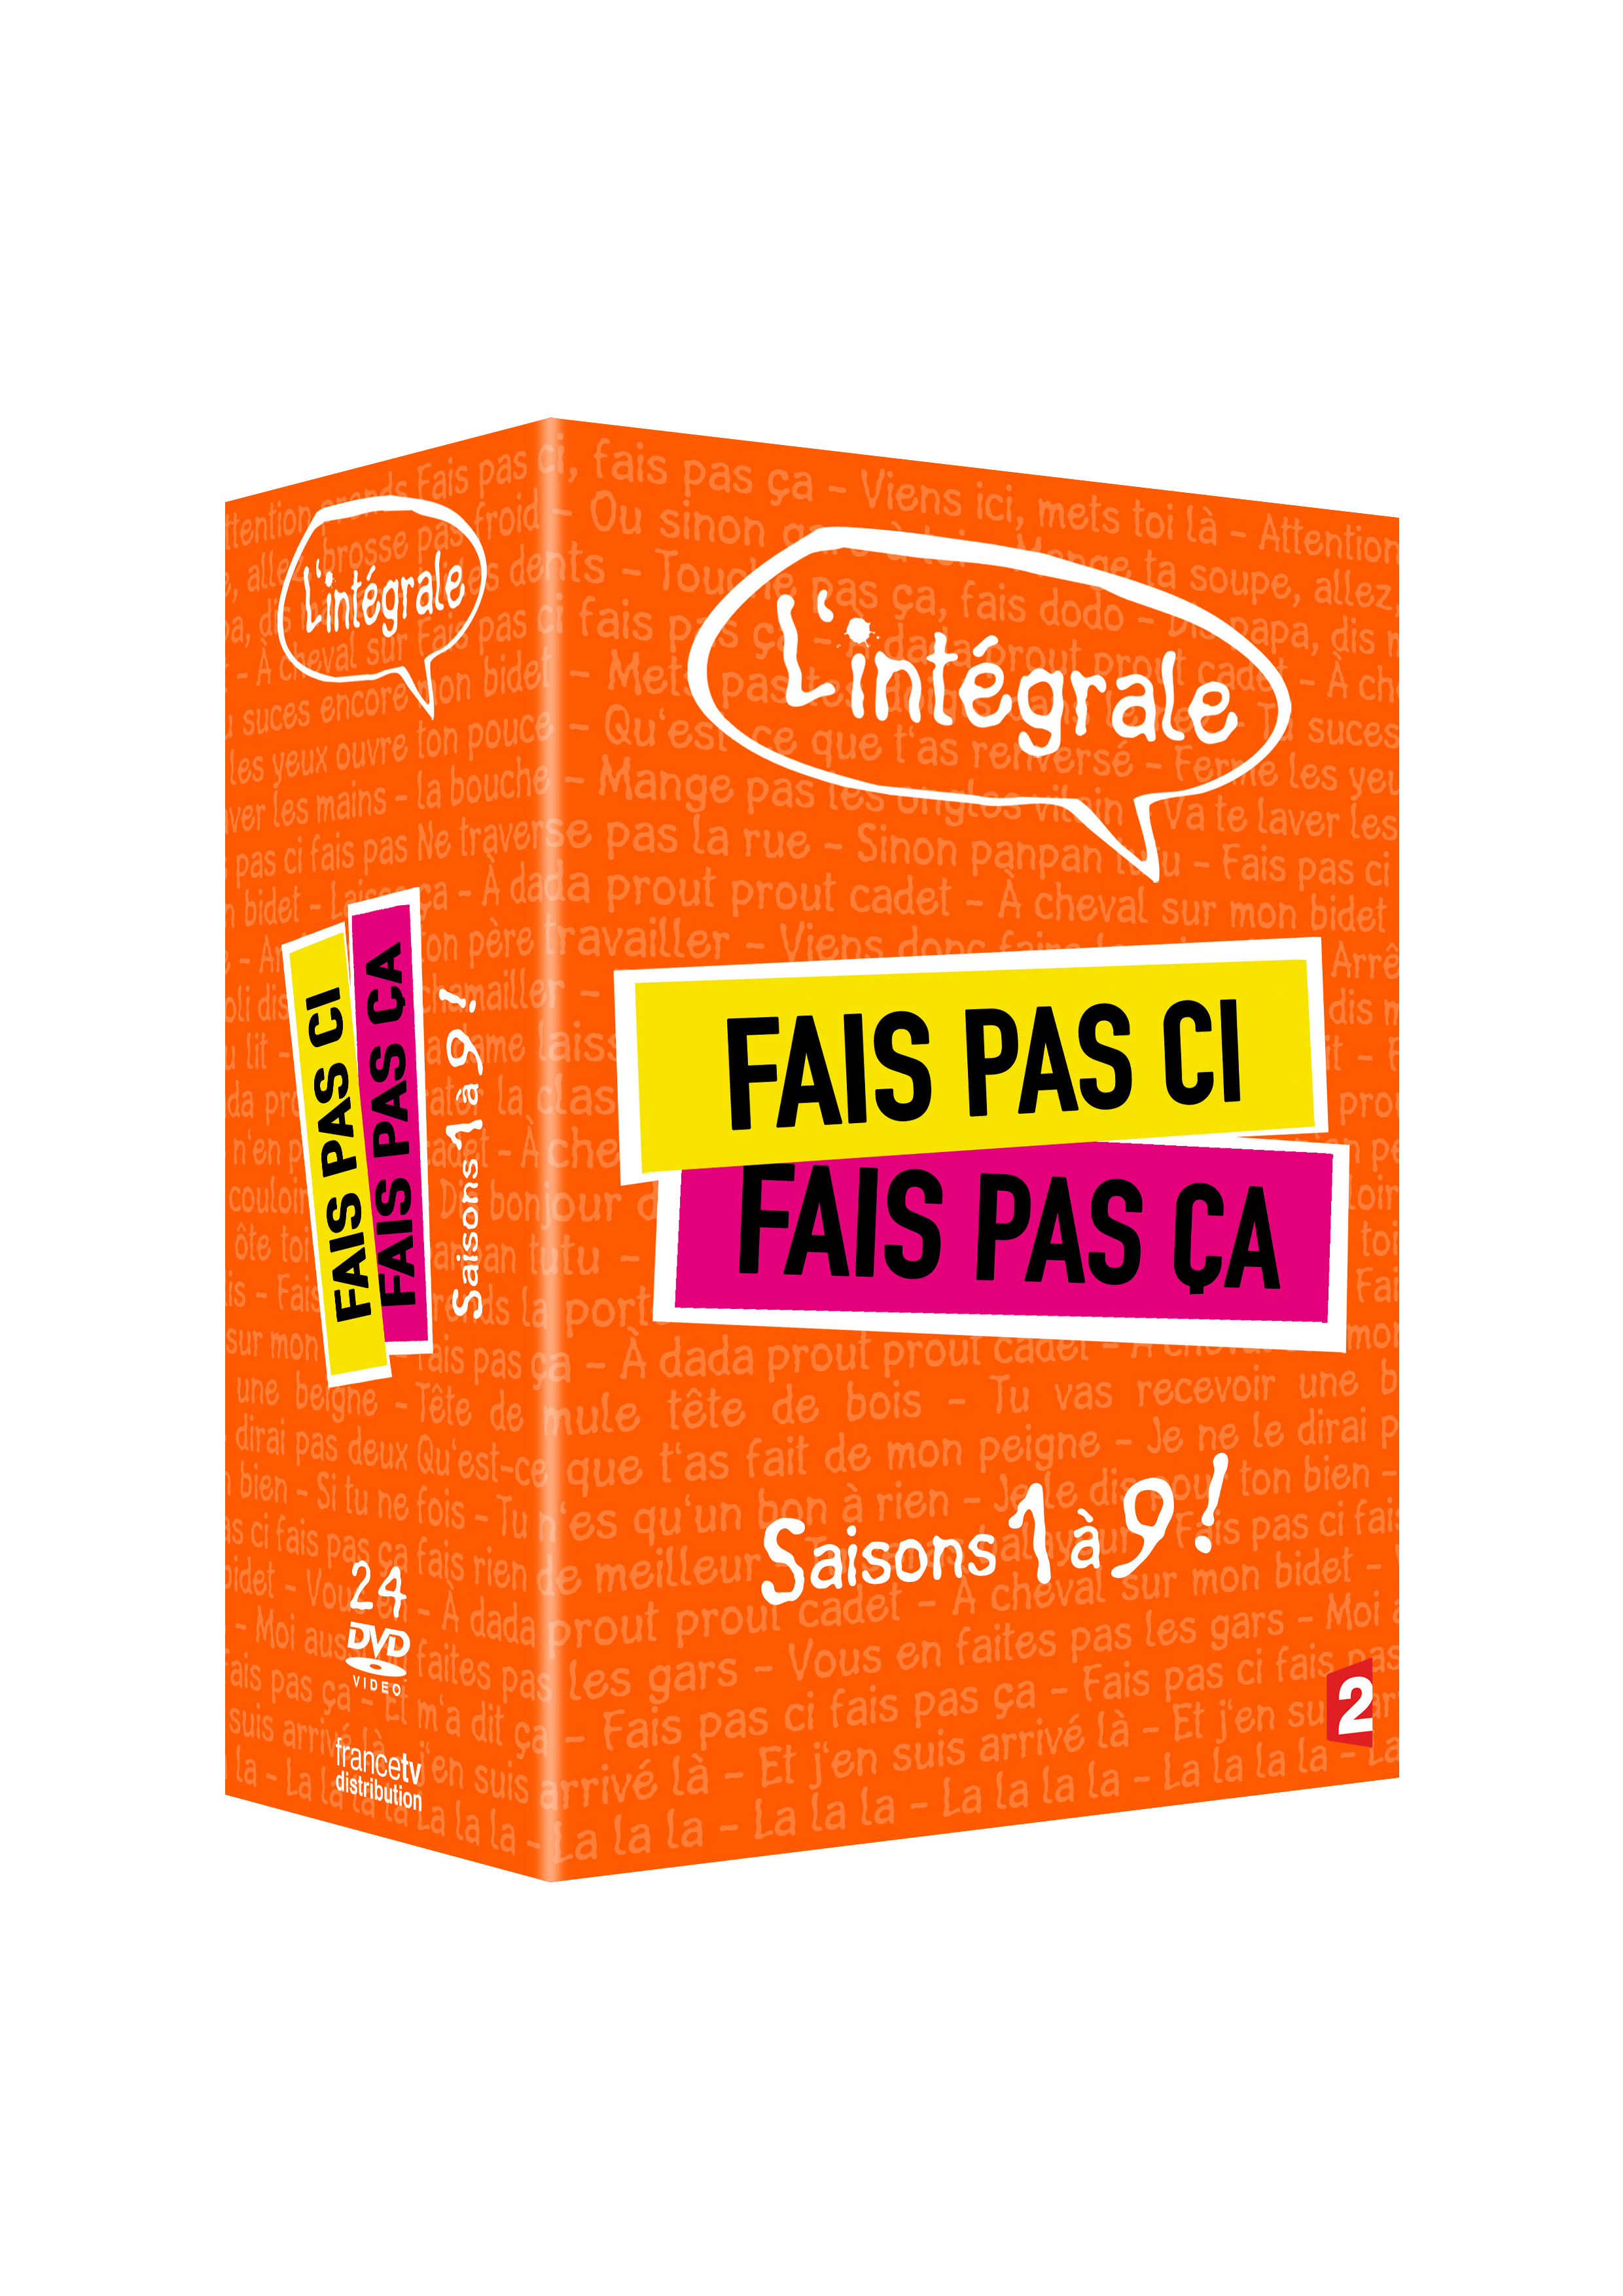 integrale_fais_pas_ci_fais_pas_ca_s01_a_s09_-_dvd_-_3d_copie.jpg